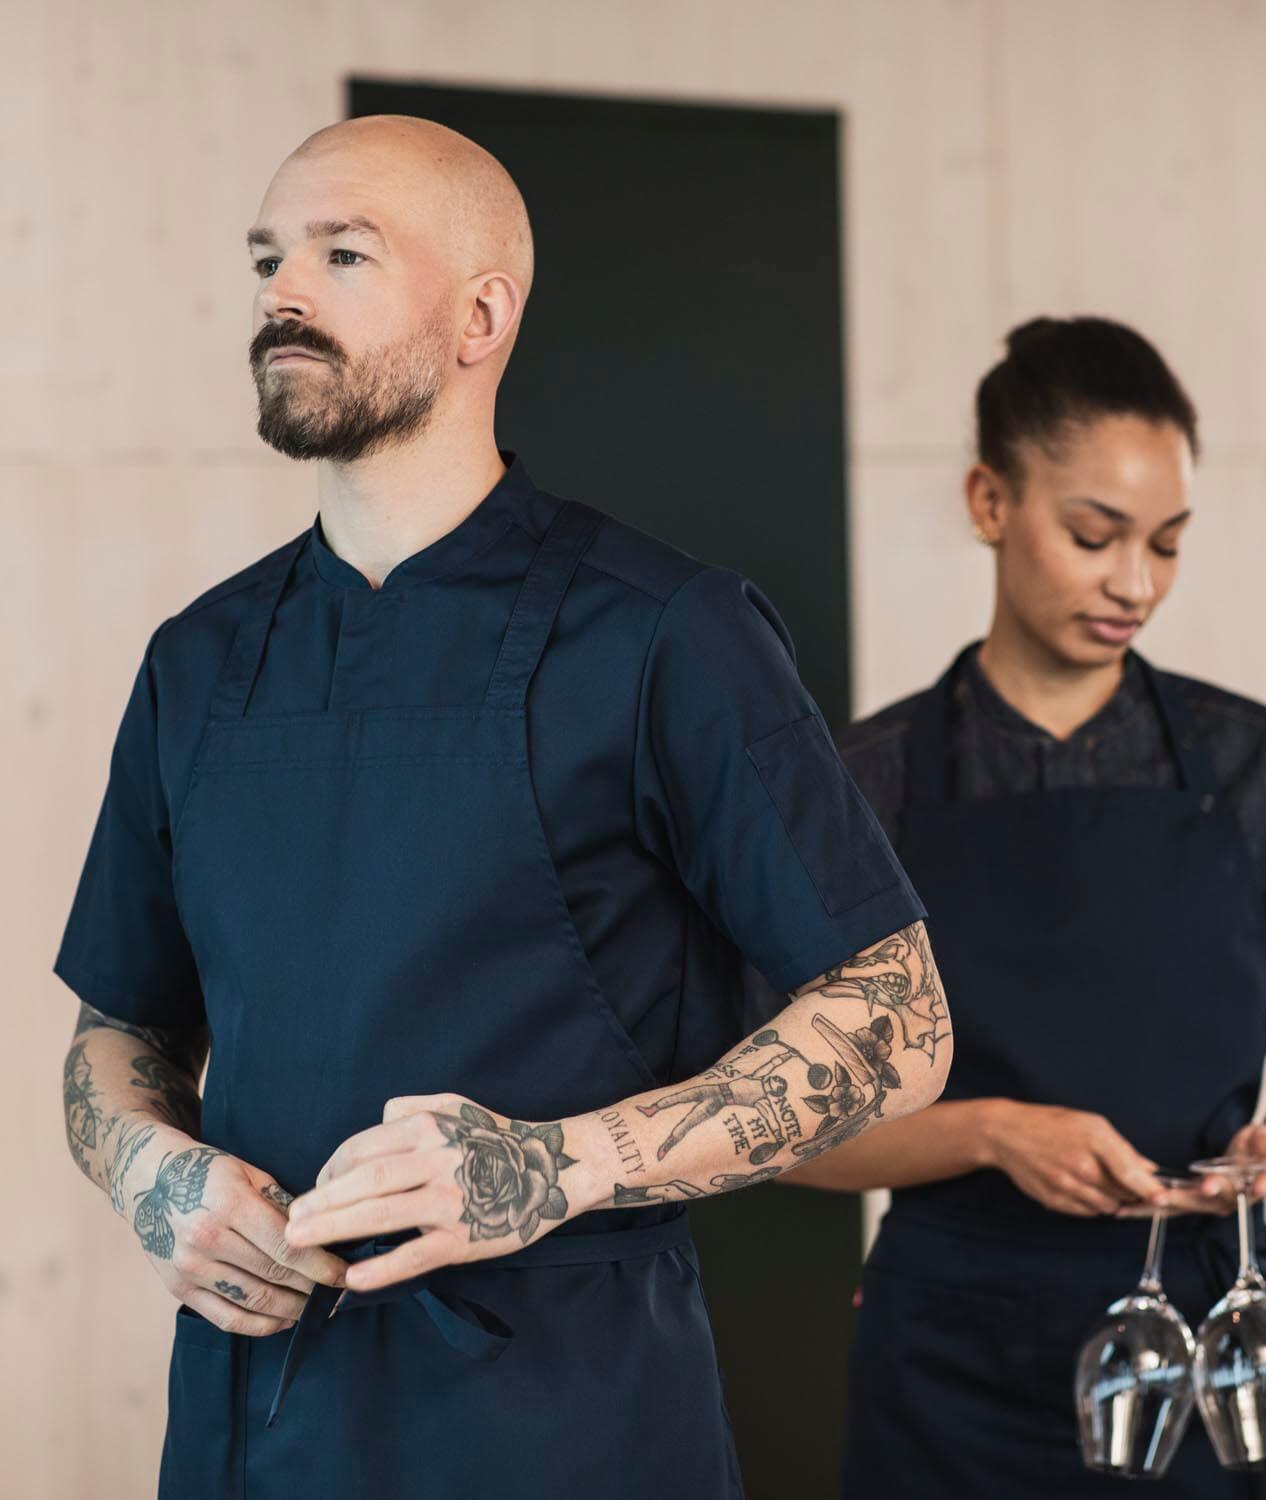 Två professionella kockar klädda i Segers senaste mörkblå kockrock modell 1097 och förkläde modell 4579 arbetar samfokuserat i ett kök med modern design, framhäver tatuerade armar som symbol för hantverksskicklighet.